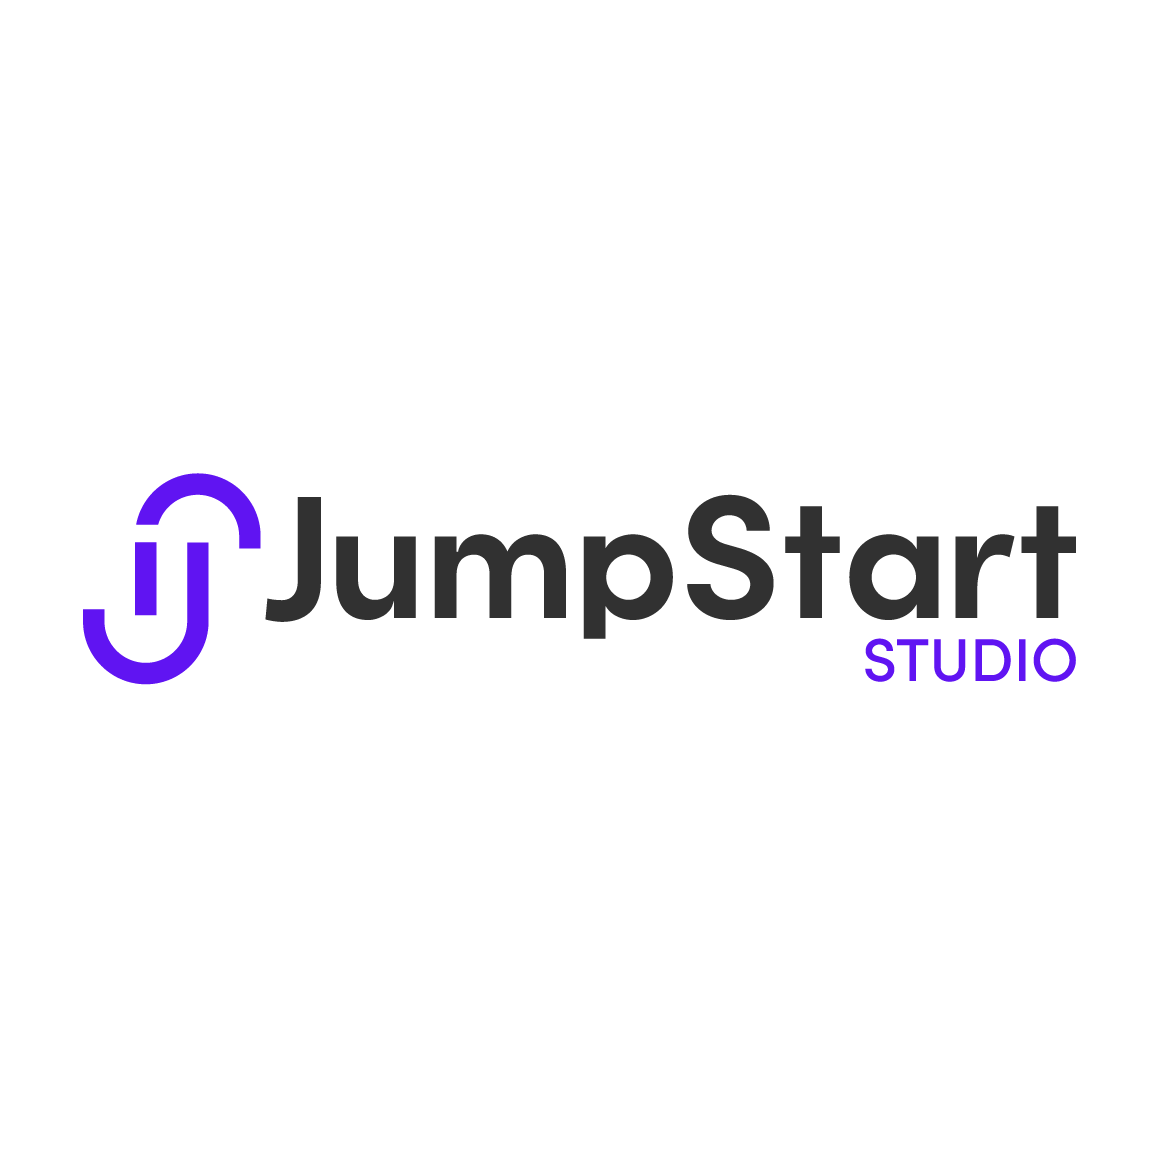 JUMPSTART STUDIO logo